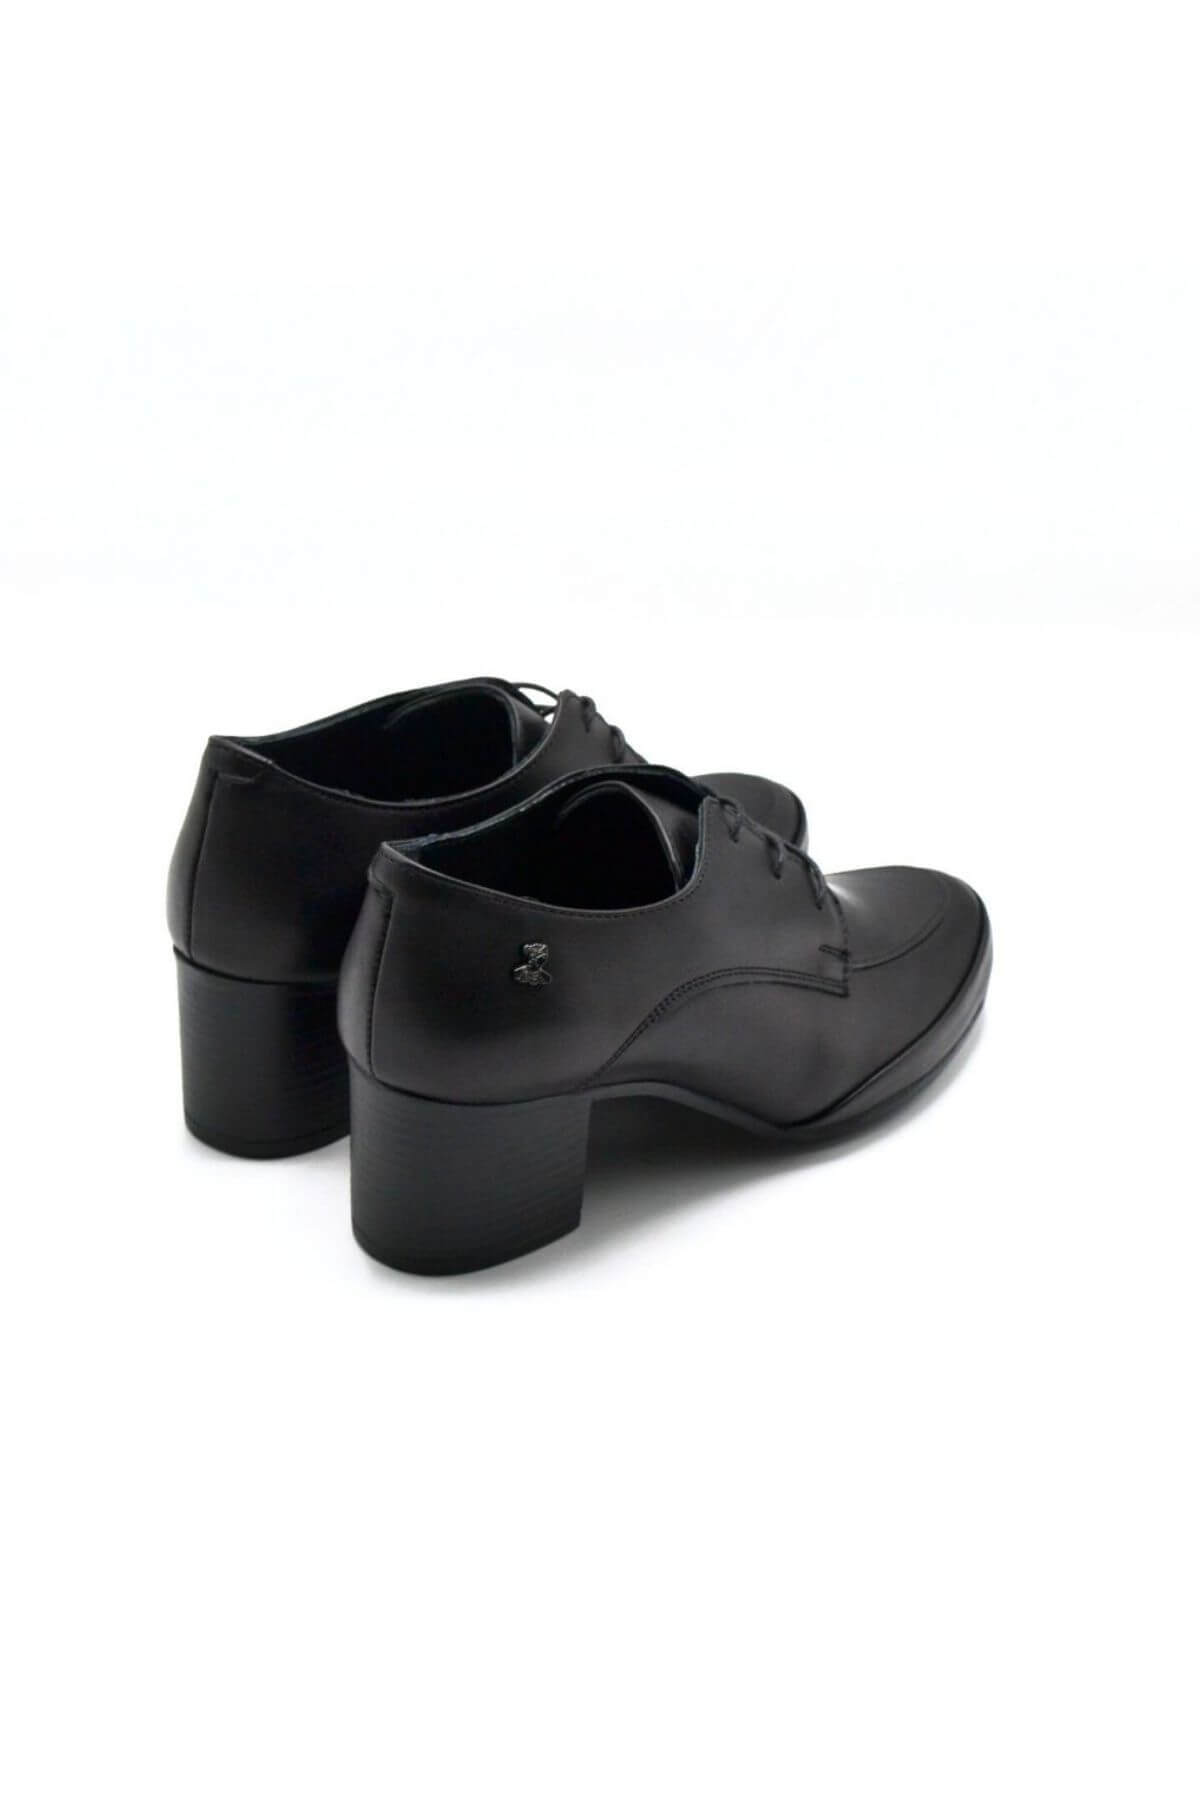 Kadın Topuklu Deri Ayakkabı Siyah 1911940K